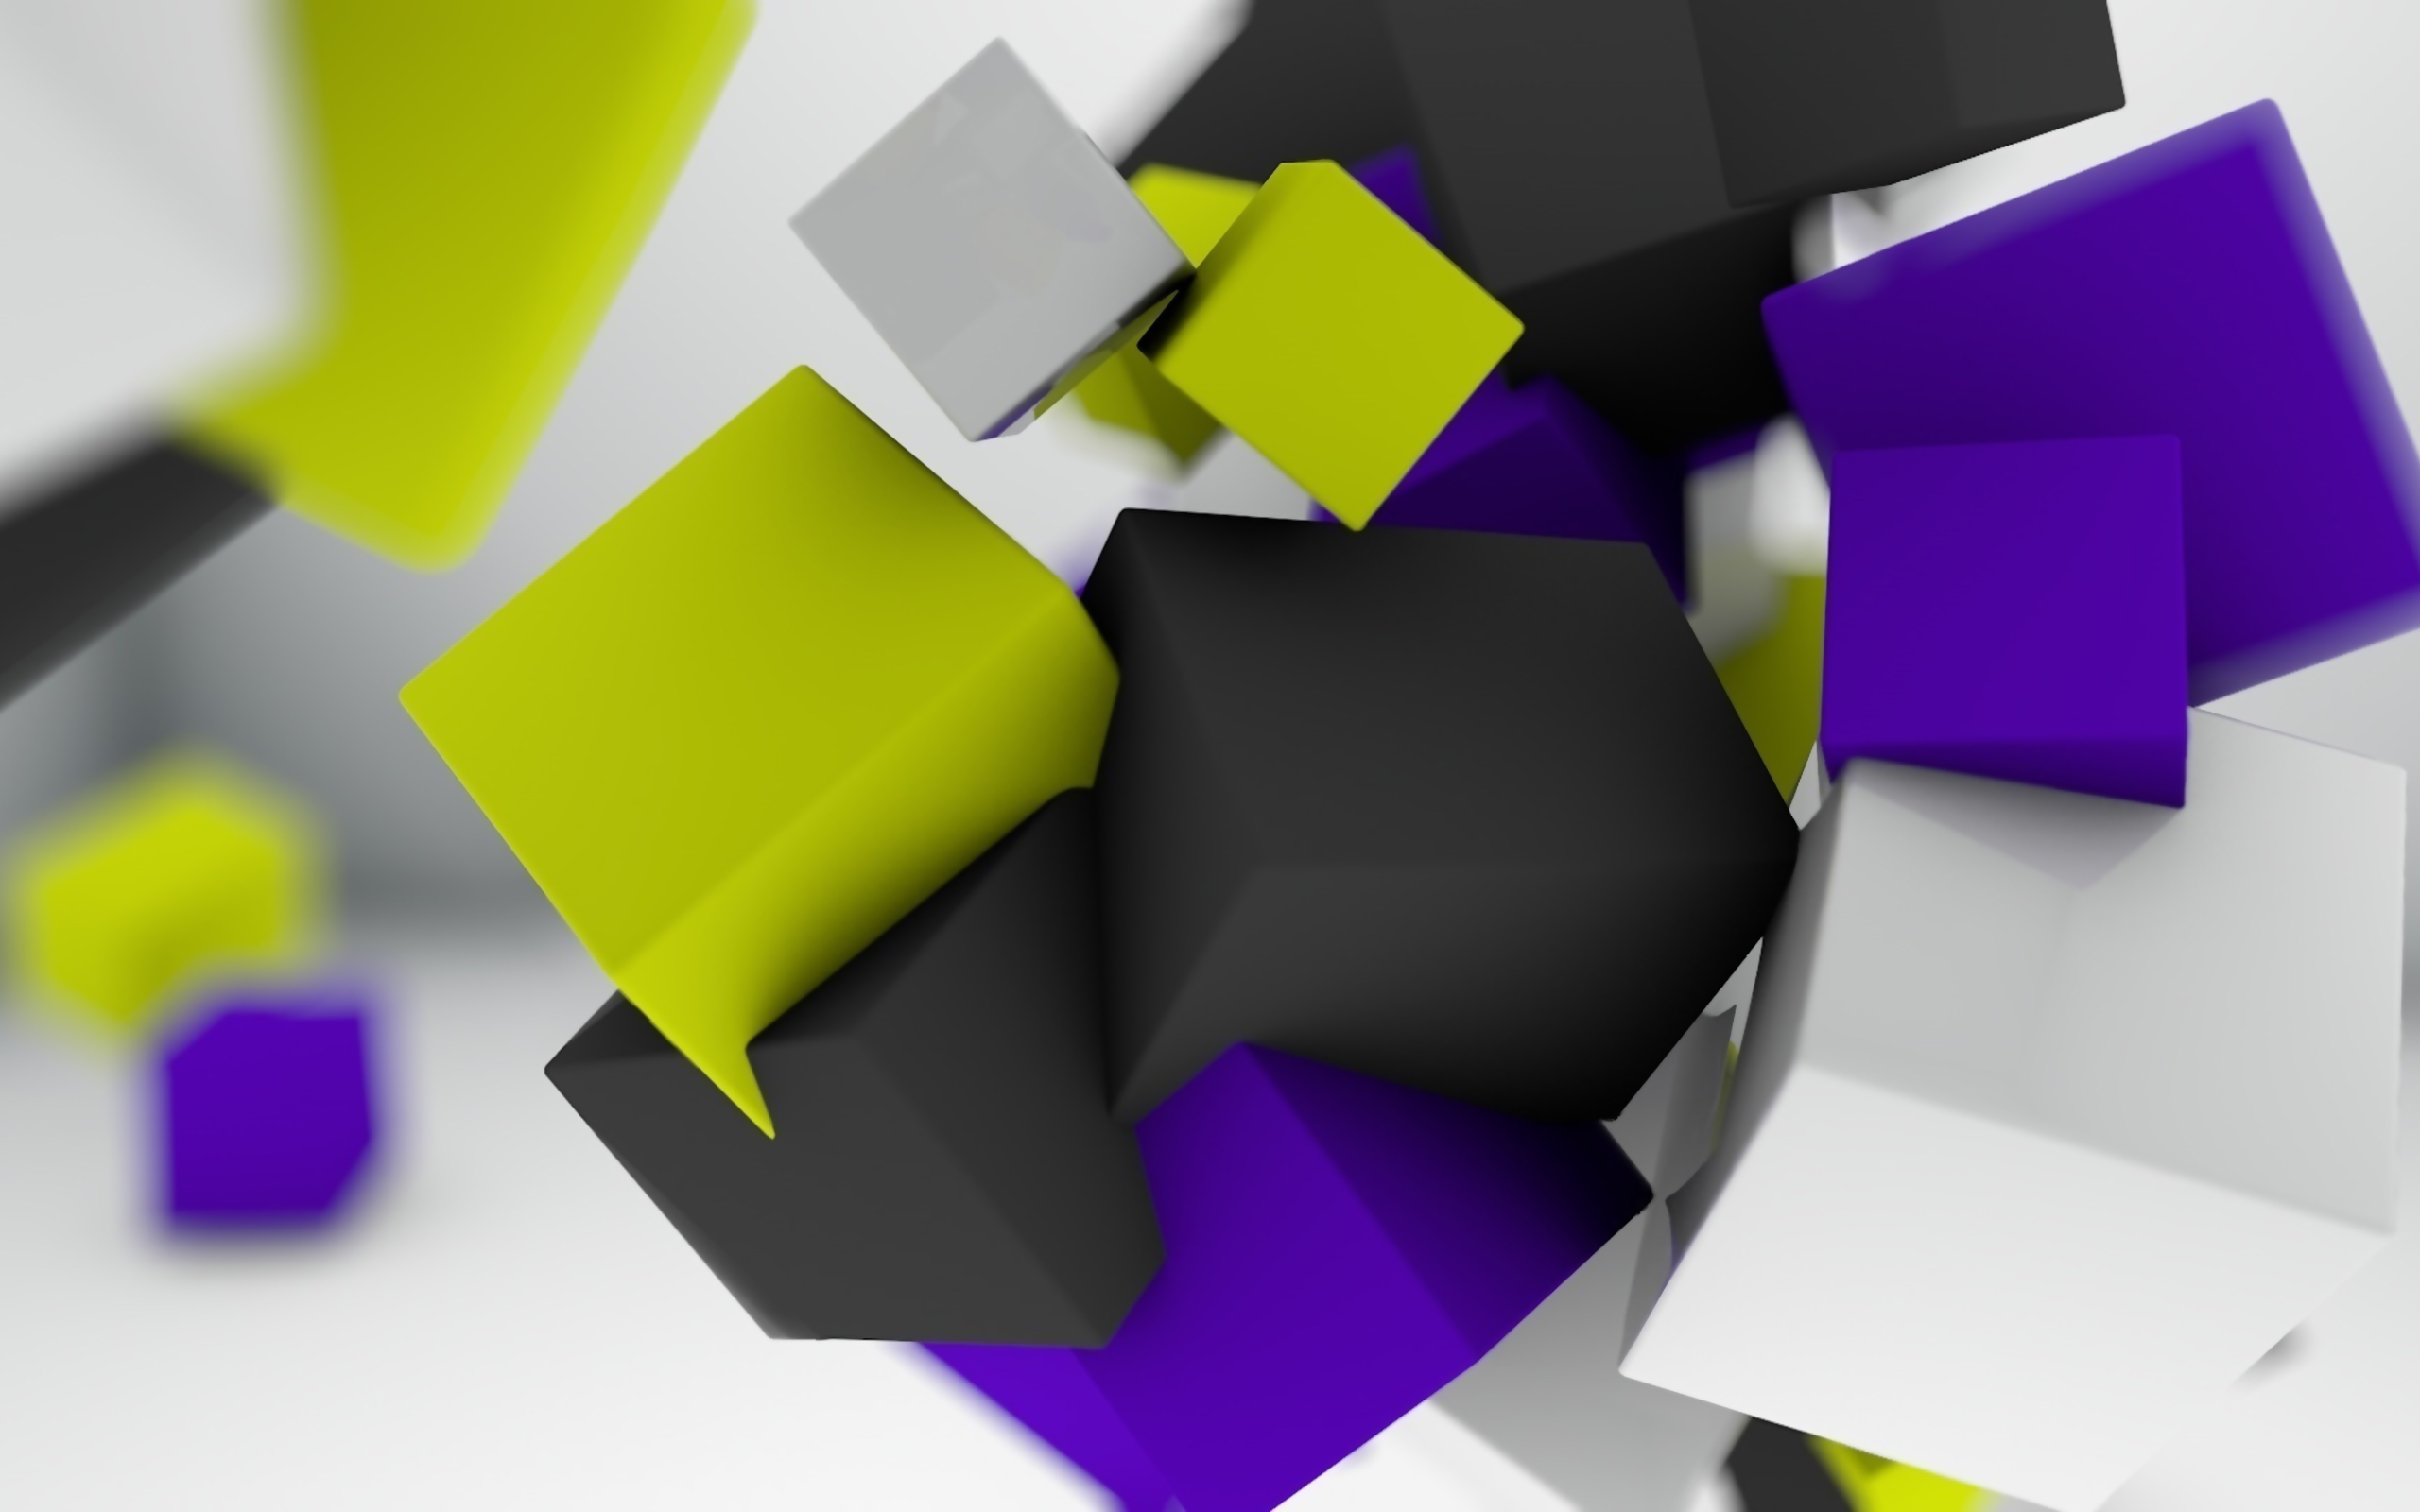 Color cubes digitalart 3D abstract 2560x1600